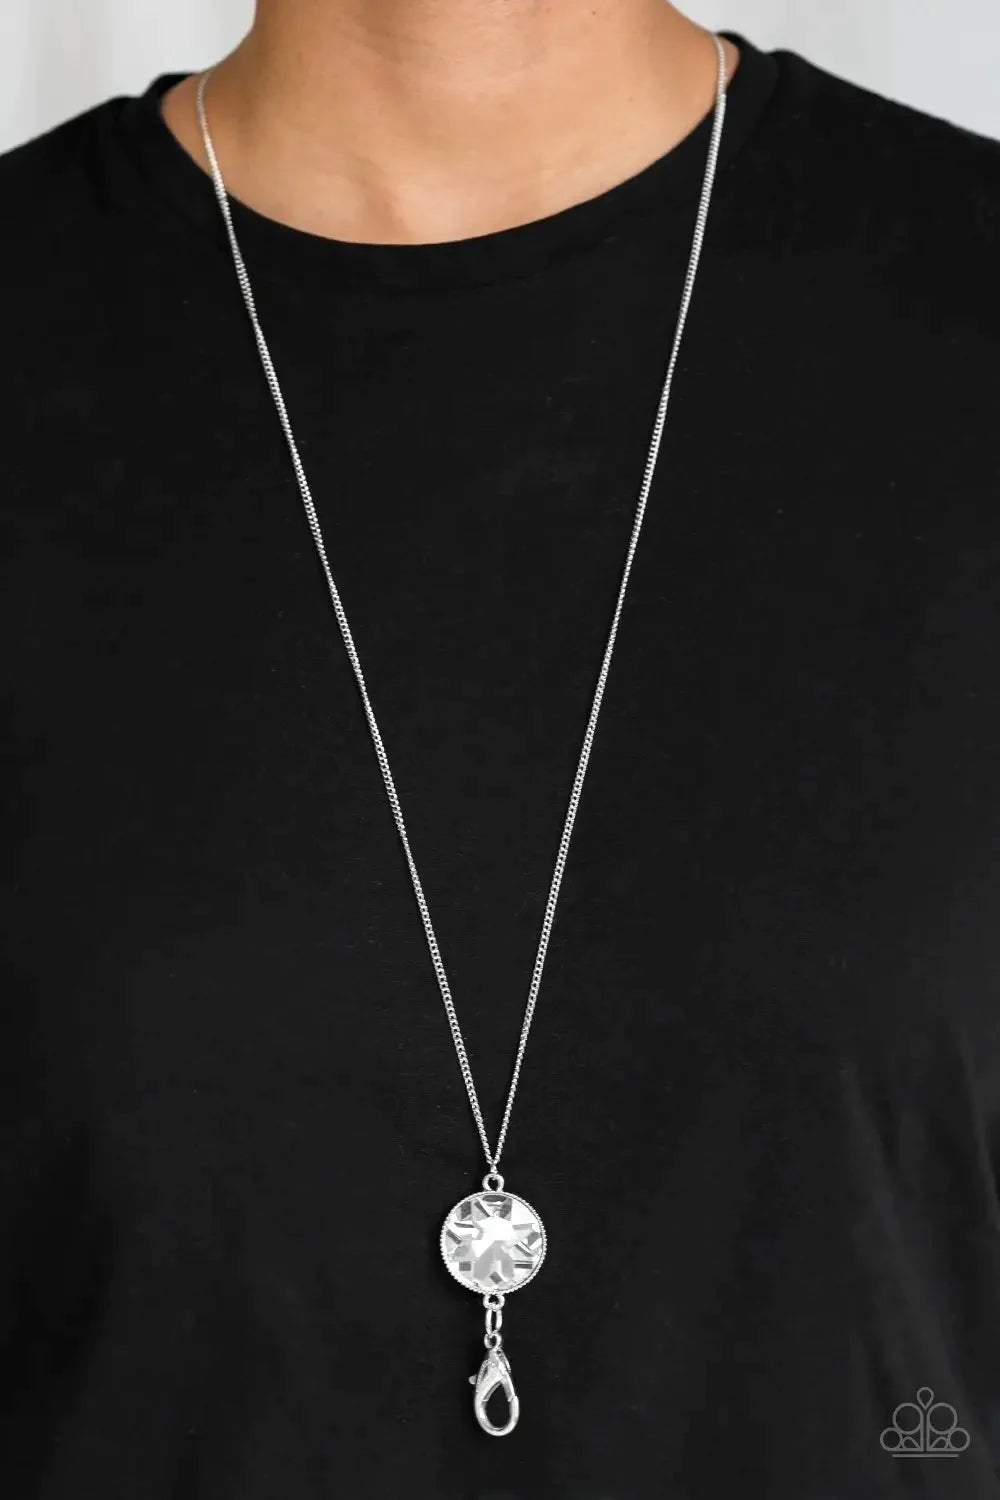 Dauntless Diva - White Lanyard Necklace Set